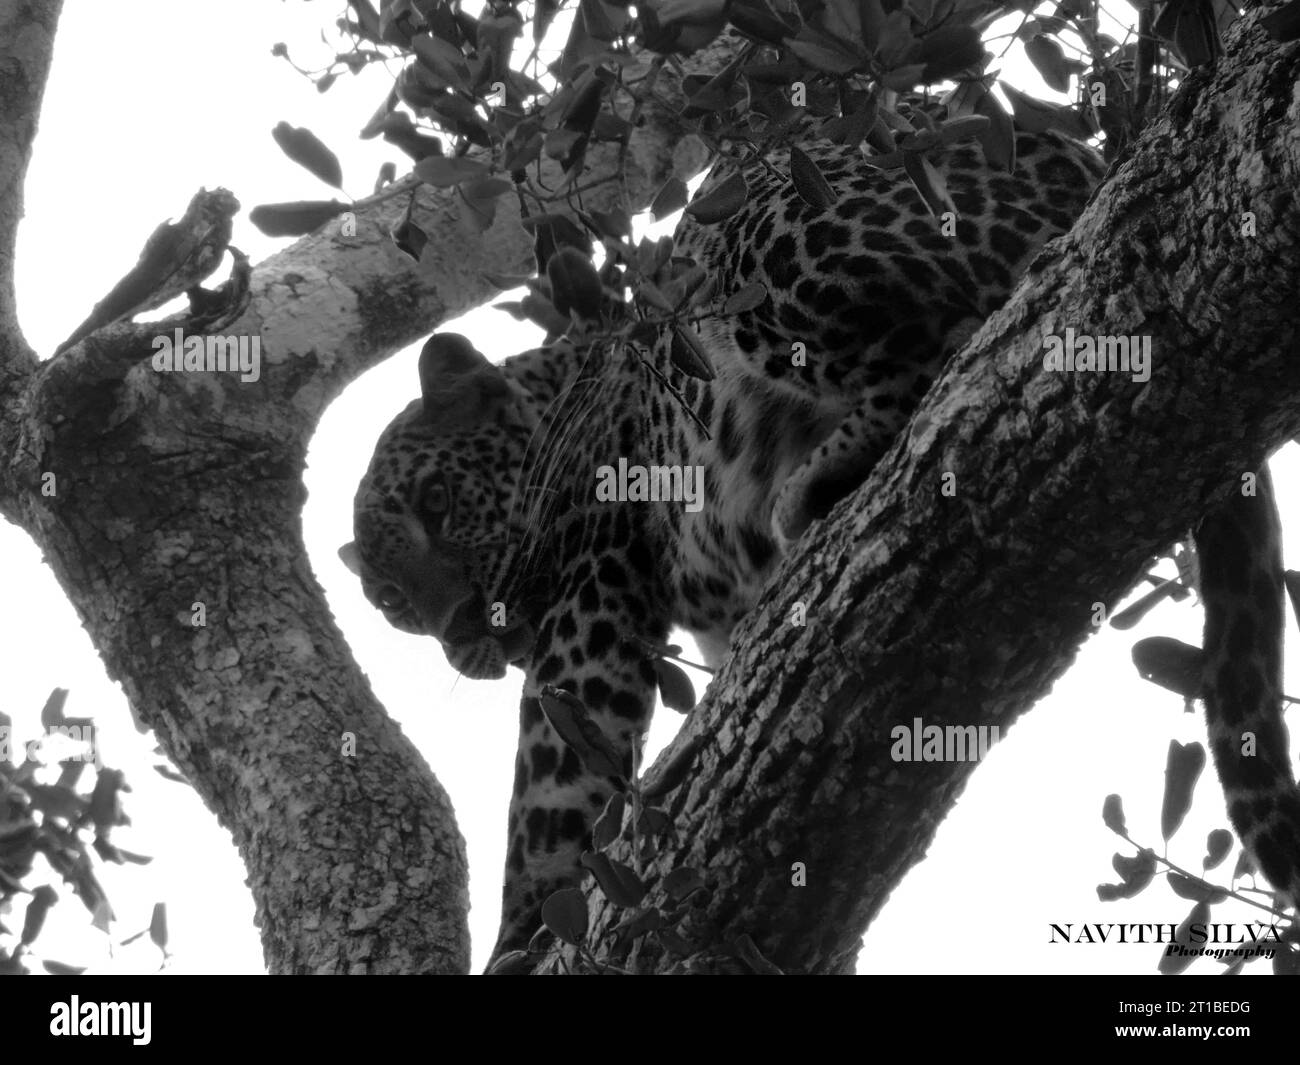 Sri Lankan leopards in the Wild, Visit Sri Lanka Stock Photo